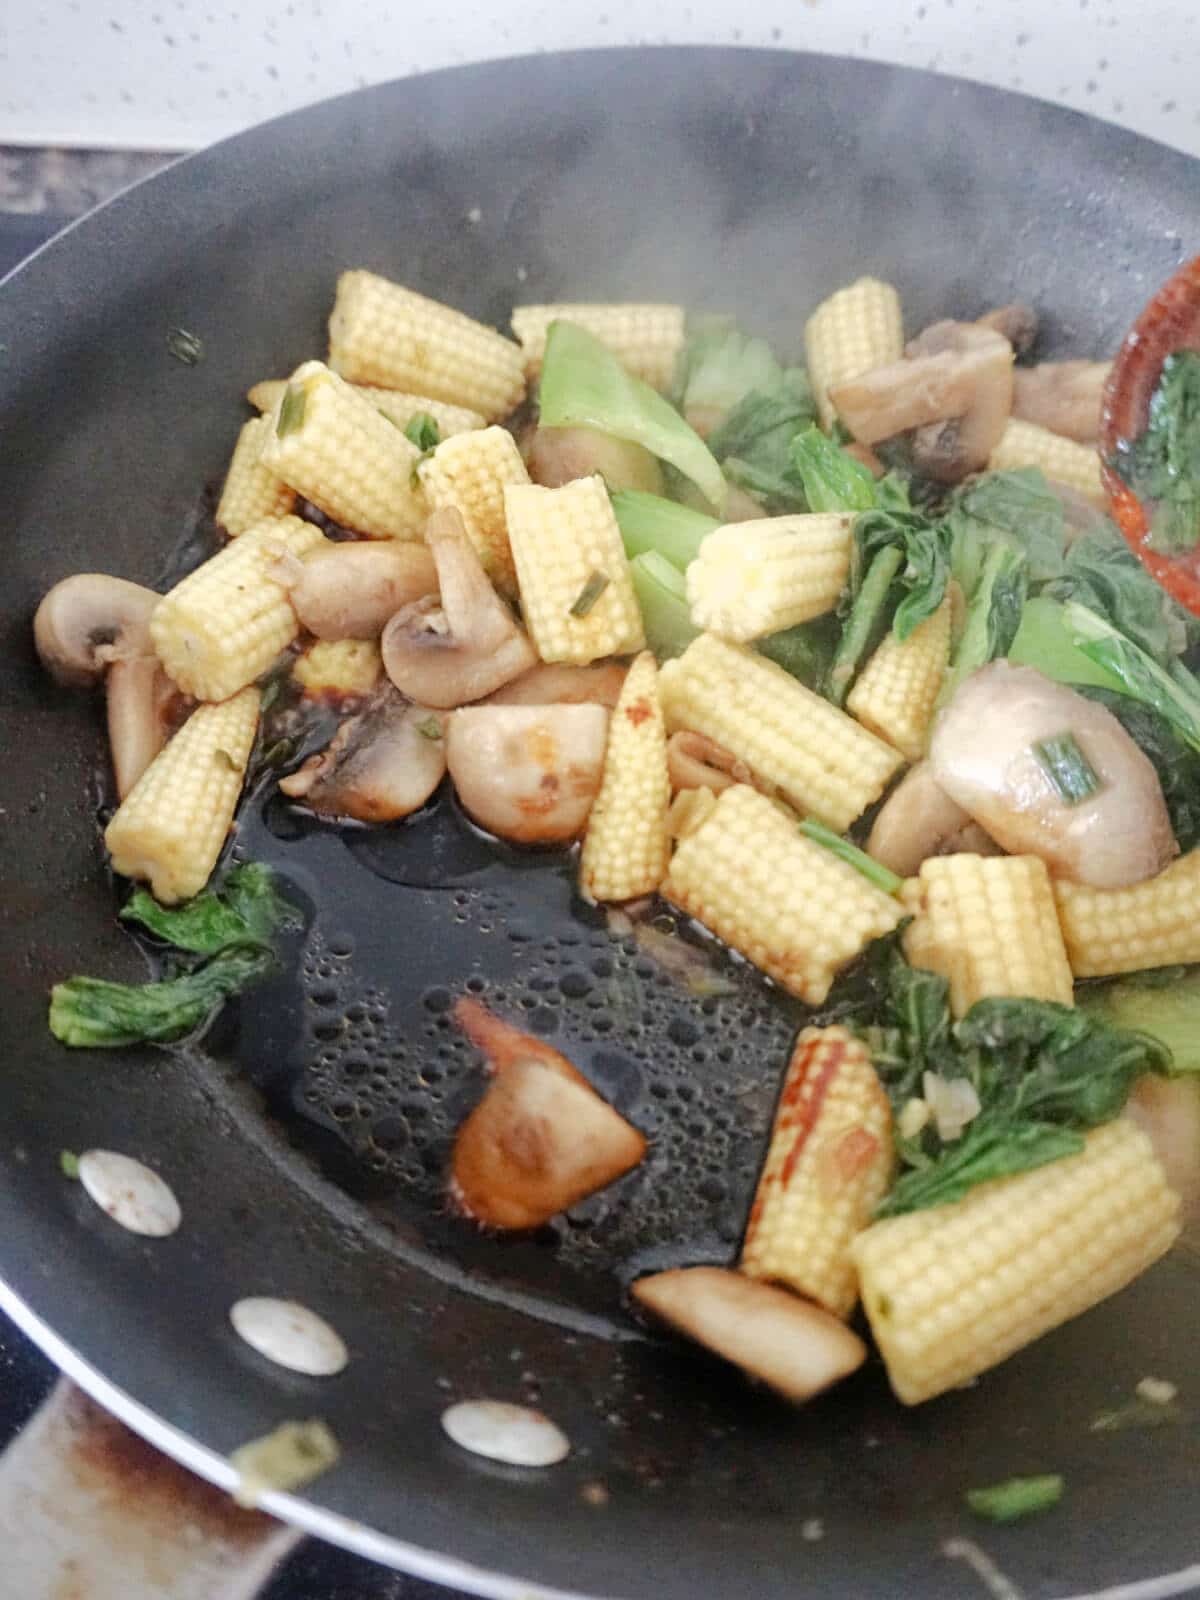 A pan with stir fry and sauce.